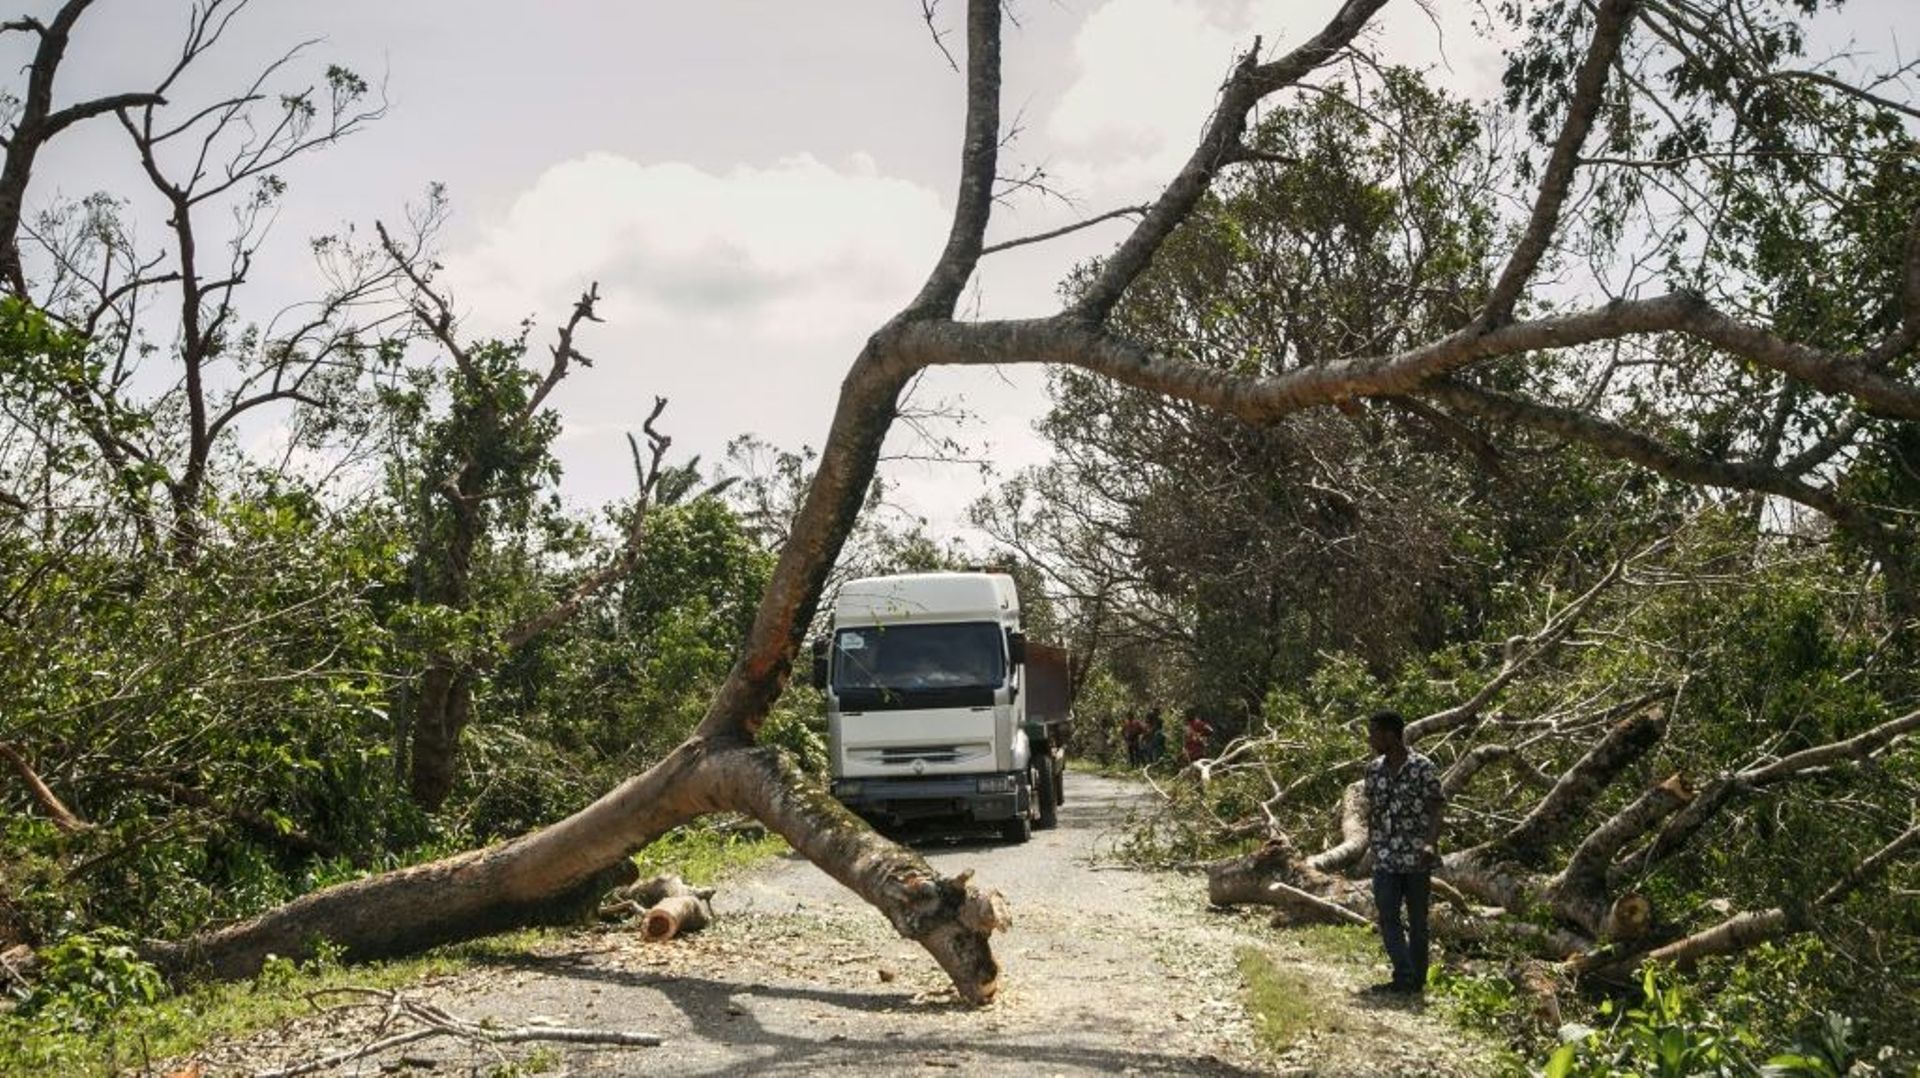 Un camion tente de contourner un arbre tombé à terre lors du passage du cyclone Batsirai à Antsenavolo, à Madagascar, le 8 février 2022

. The death toll from Tropical Cyclone Batsirai has risen to 92 in Madagascar, authorities said Wednesday, as humanita